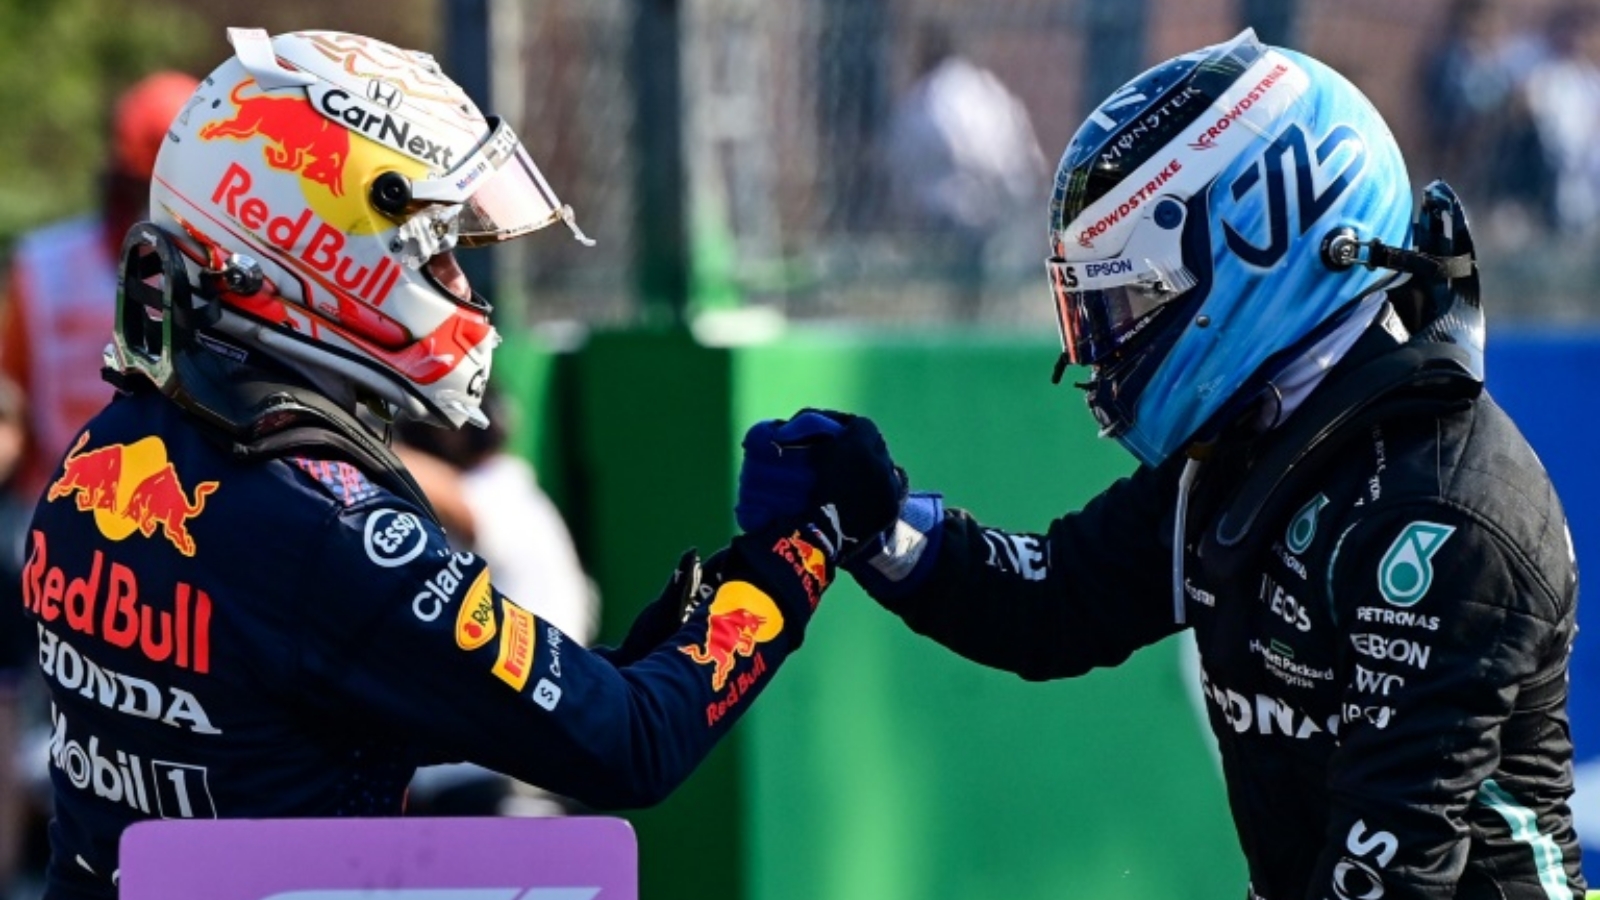 فالتيري بوتاس يفوز بسباق السرعة في سباق جائزة إيطاليا الكبرى من بطولة العالم للفورمولا واحد لكنّ سائق ريد بول ماكس فيرستابن سينطلق من المركز الأول في سباق الأحد.